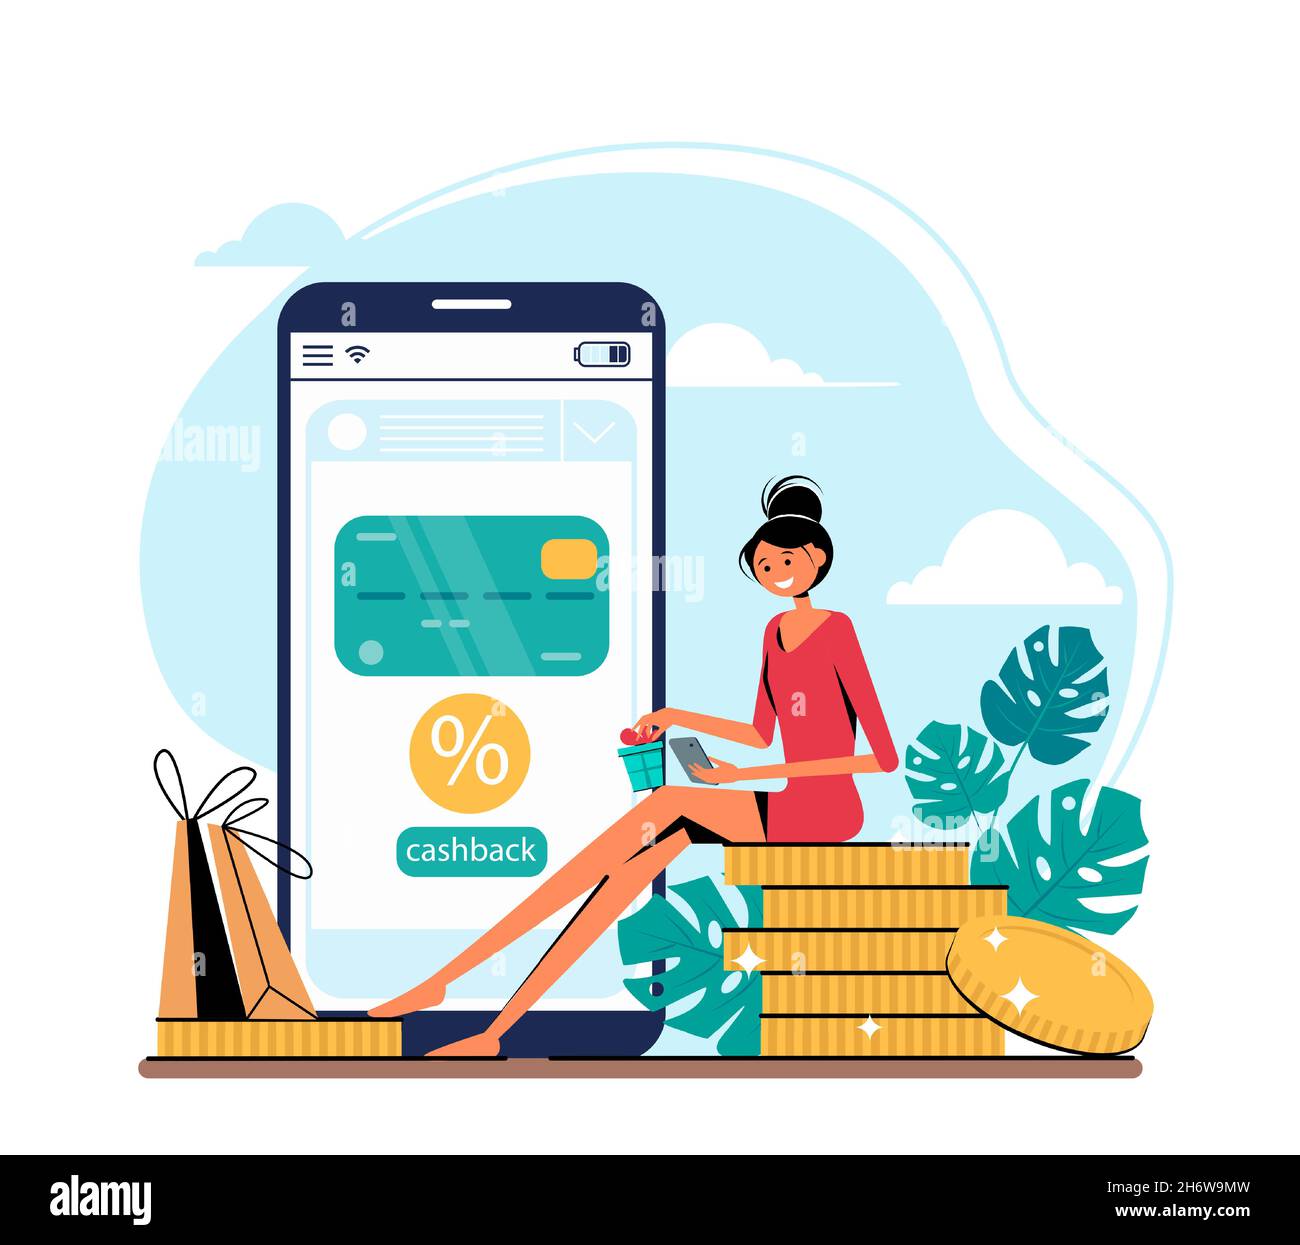 Concept de cashback - femme avec smartphone, sacs d'achats et pièces de monnaie, smartphone avec carte de crédit.Illustration vectorielle de style plat. Illustration de Vecteur